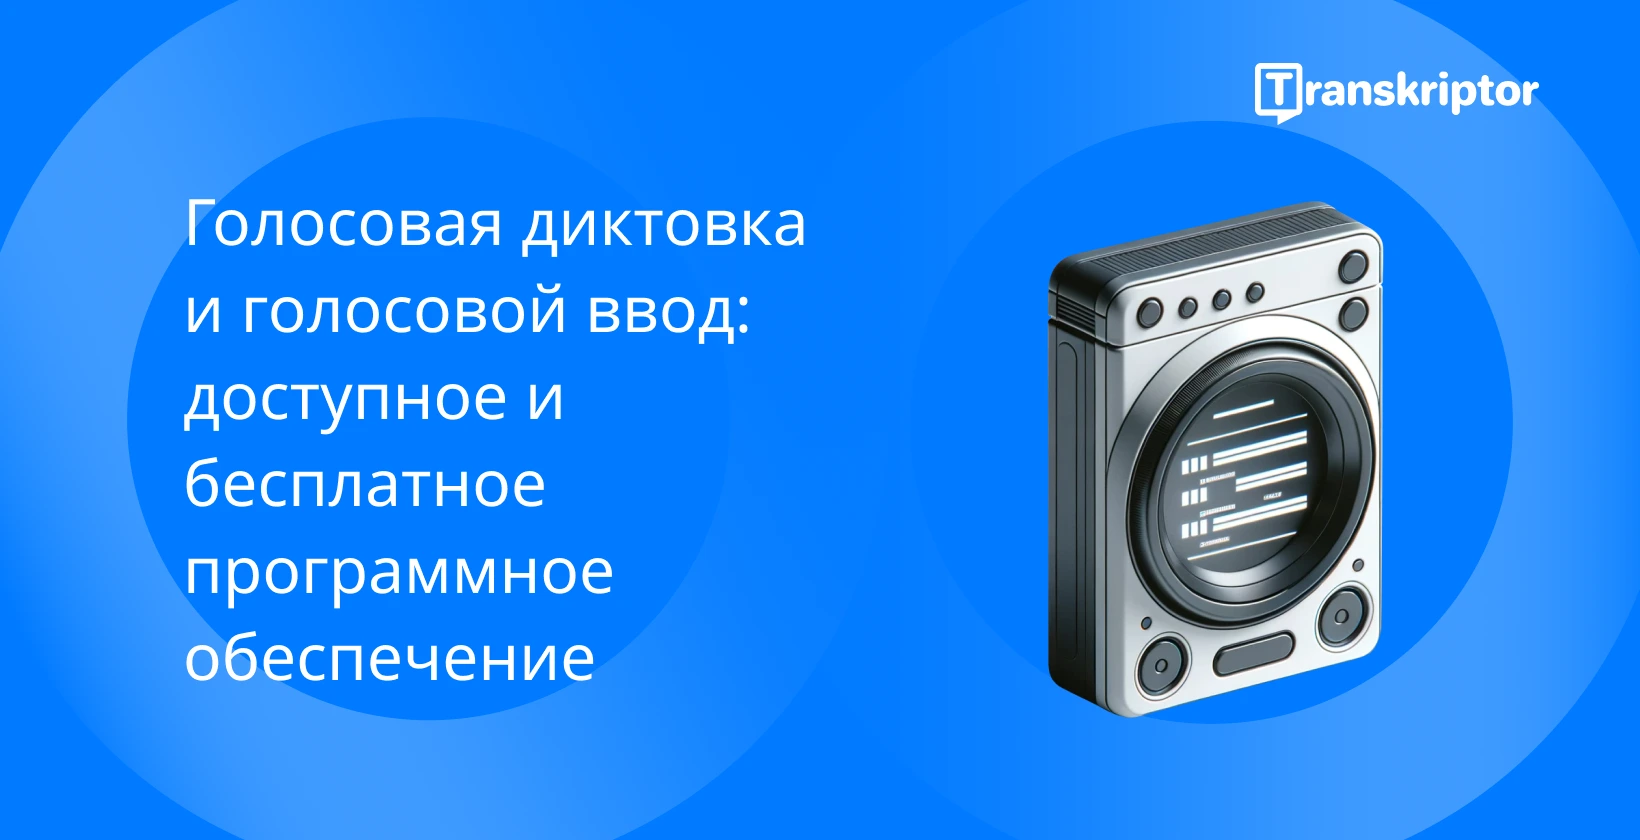 Синий винтажный микрофон с транскрипционным текстом, представляющий услуги голосовой диктовки.